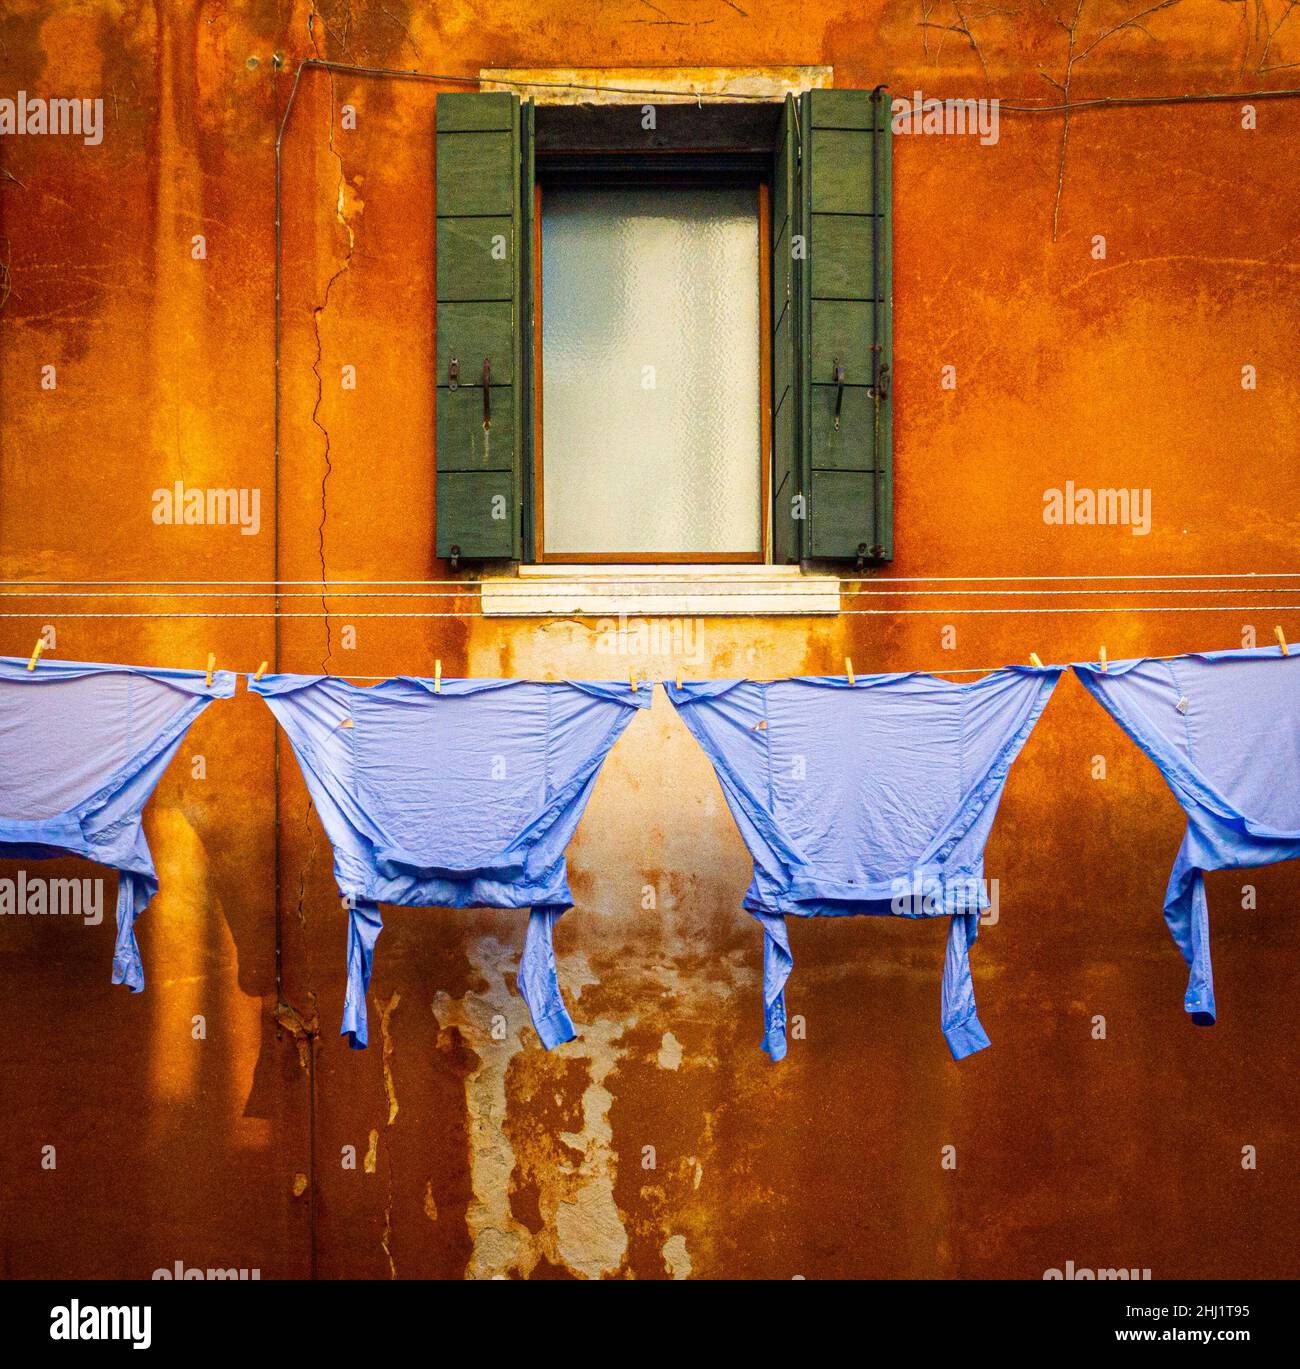 Feb 2020 Venedig - Blaue Hemden, die an einer Wäscheleine an einer verbrannten orangenen Wand und einem versperrten Fenster in Venedig hängen Stockfoto